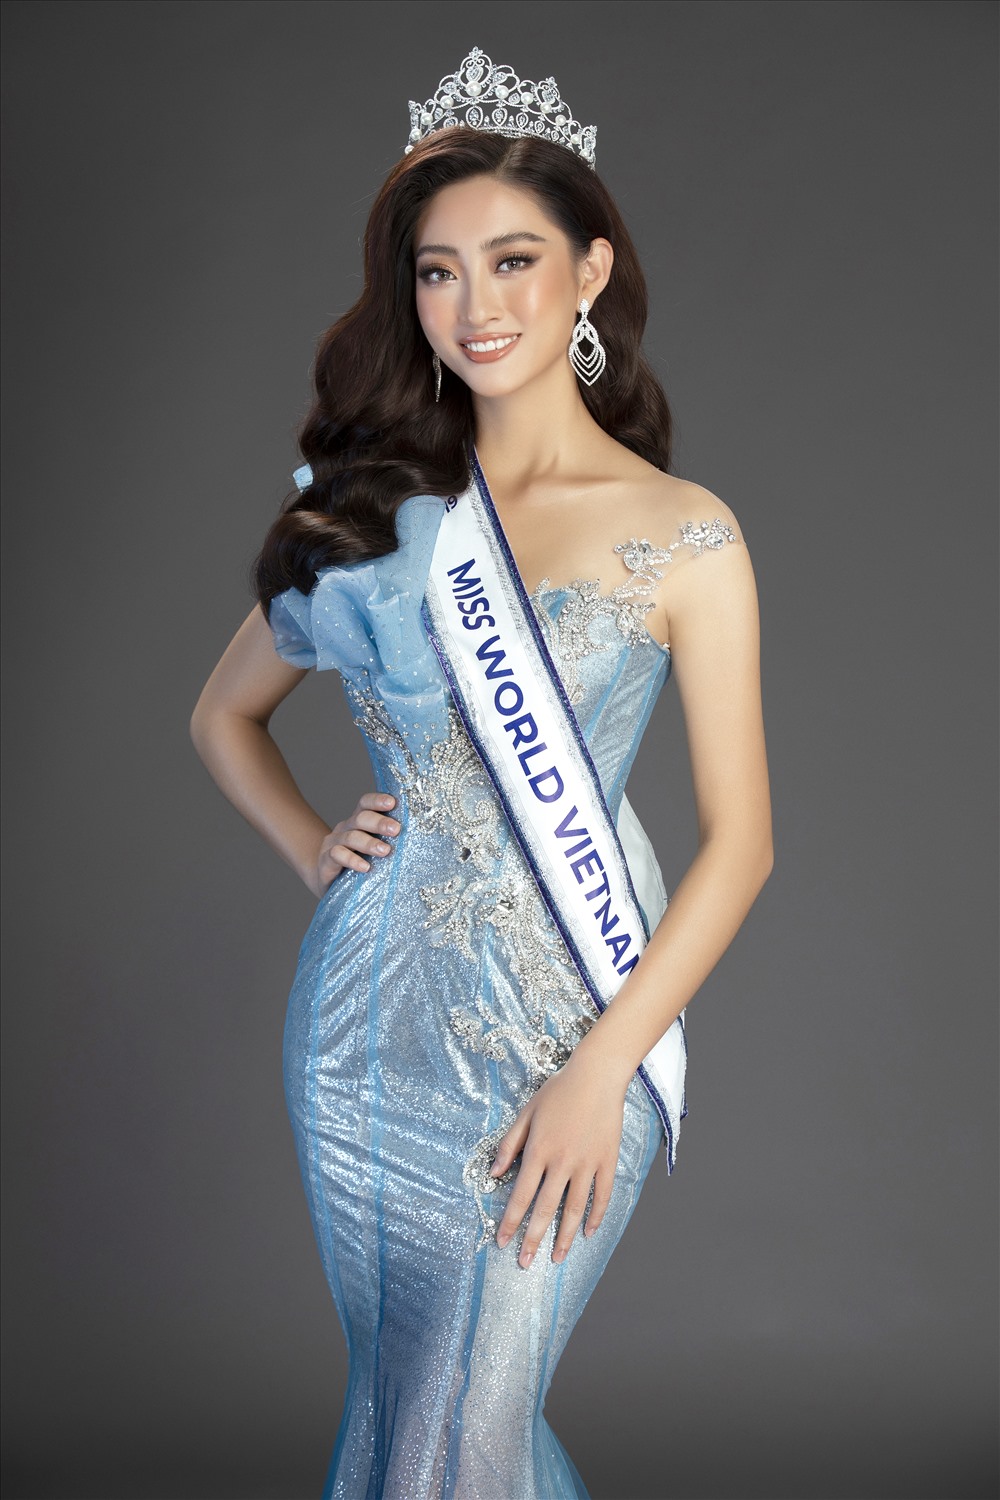 Lương Thùy Linh chính thức đăng quang cuộc thi Hoa hậu Thế giới Việt Nam năm 2019